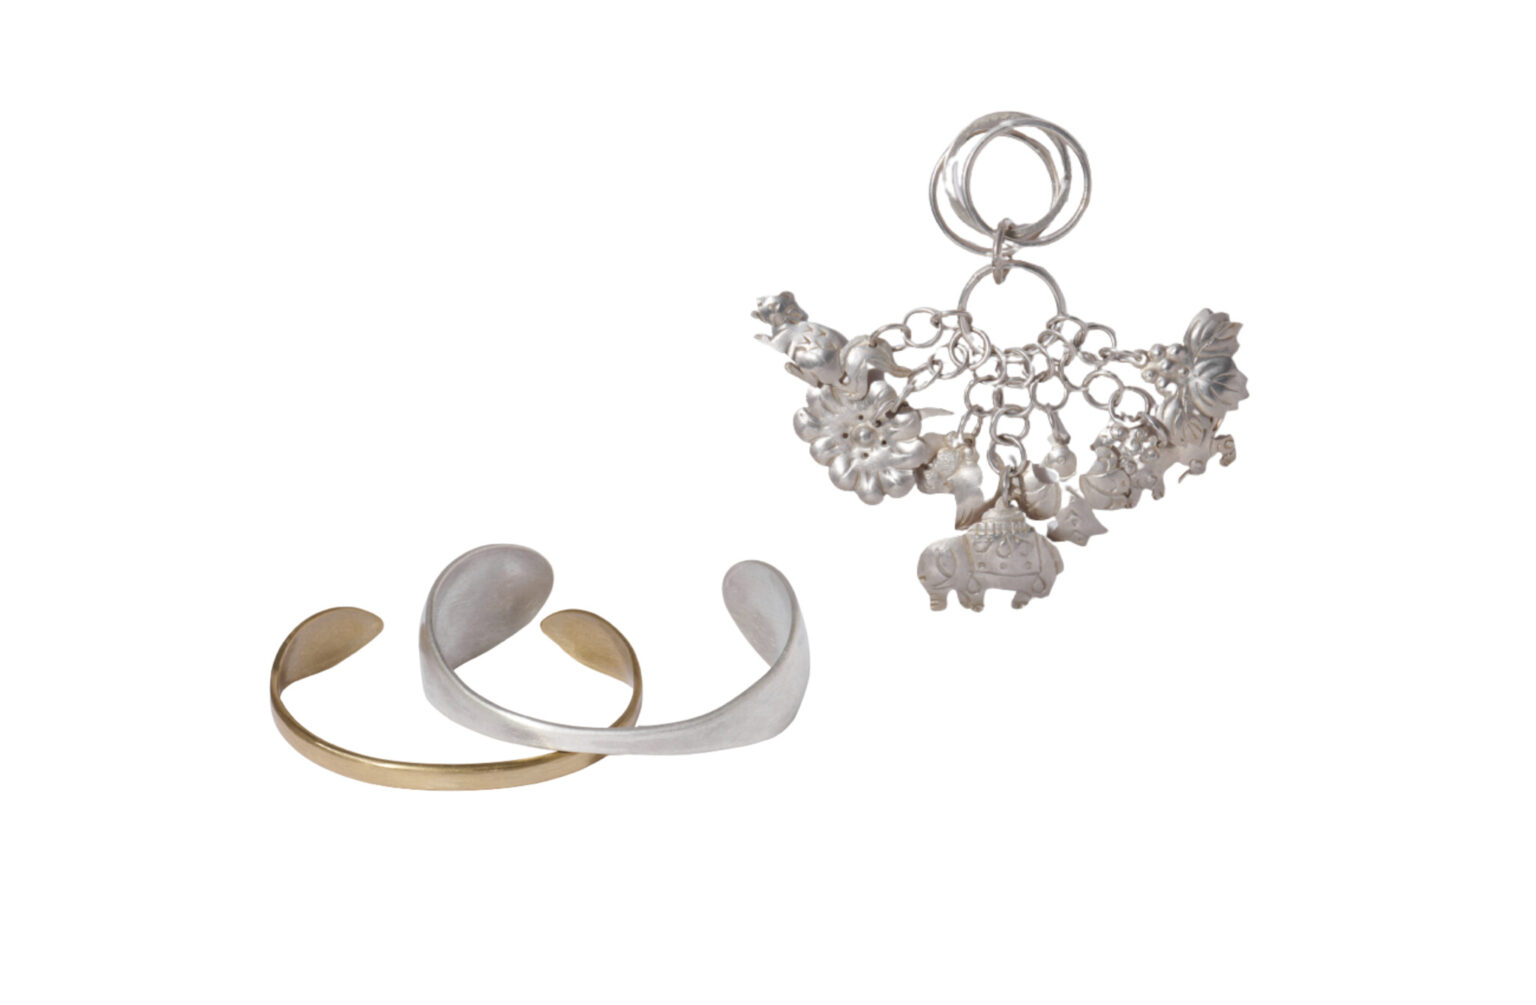 〈cicafu metal works〉の装身具。喜舎場智子と平澤尚子の二人で制作。左は真鍮とシルバーの「Wrap bracelet」。右は、伝統装飾品をアレンジした「オリジナル房指輪」。シーサーや鳩などの繊細なモチーフが魅力。展示会や問い合わせにて販売。